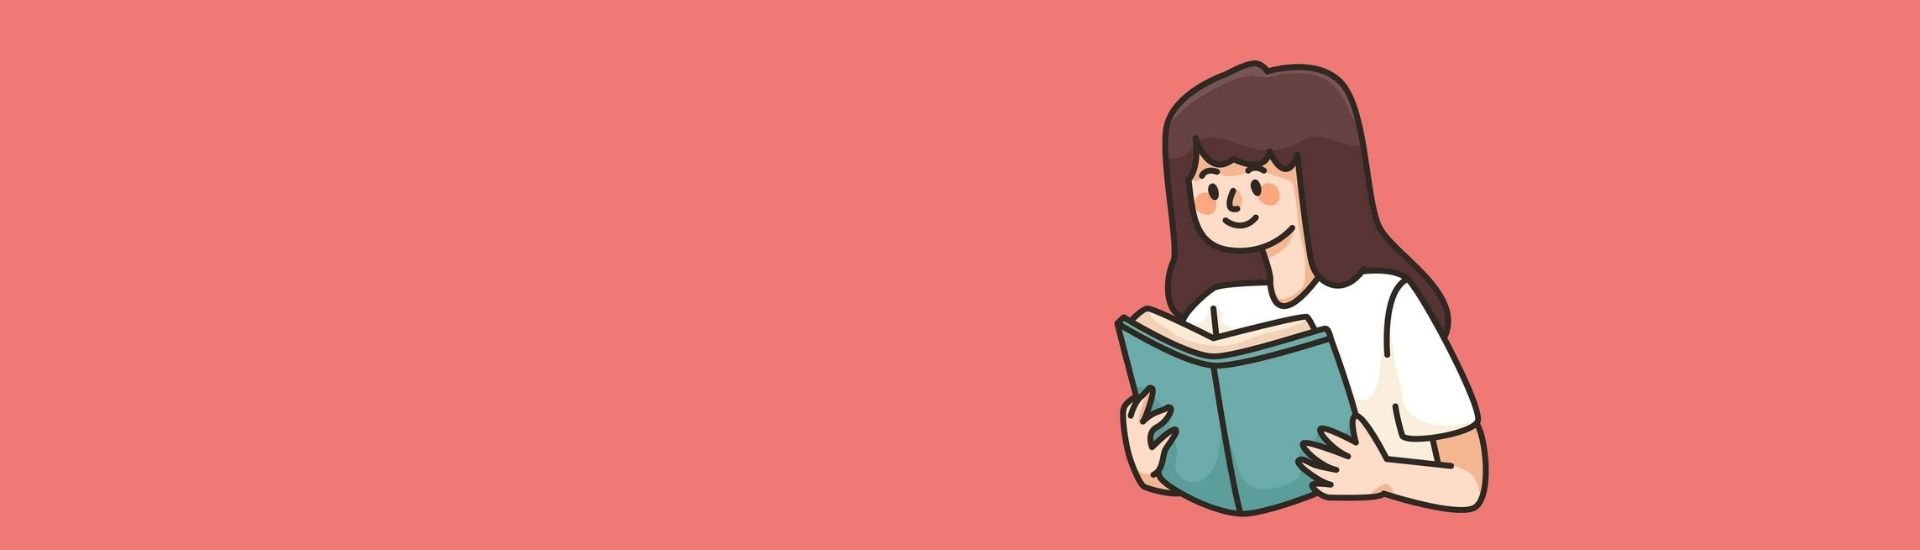 Ilustración de una mujer con un libro en la mano, mientras lo lee en un fondo rosado.